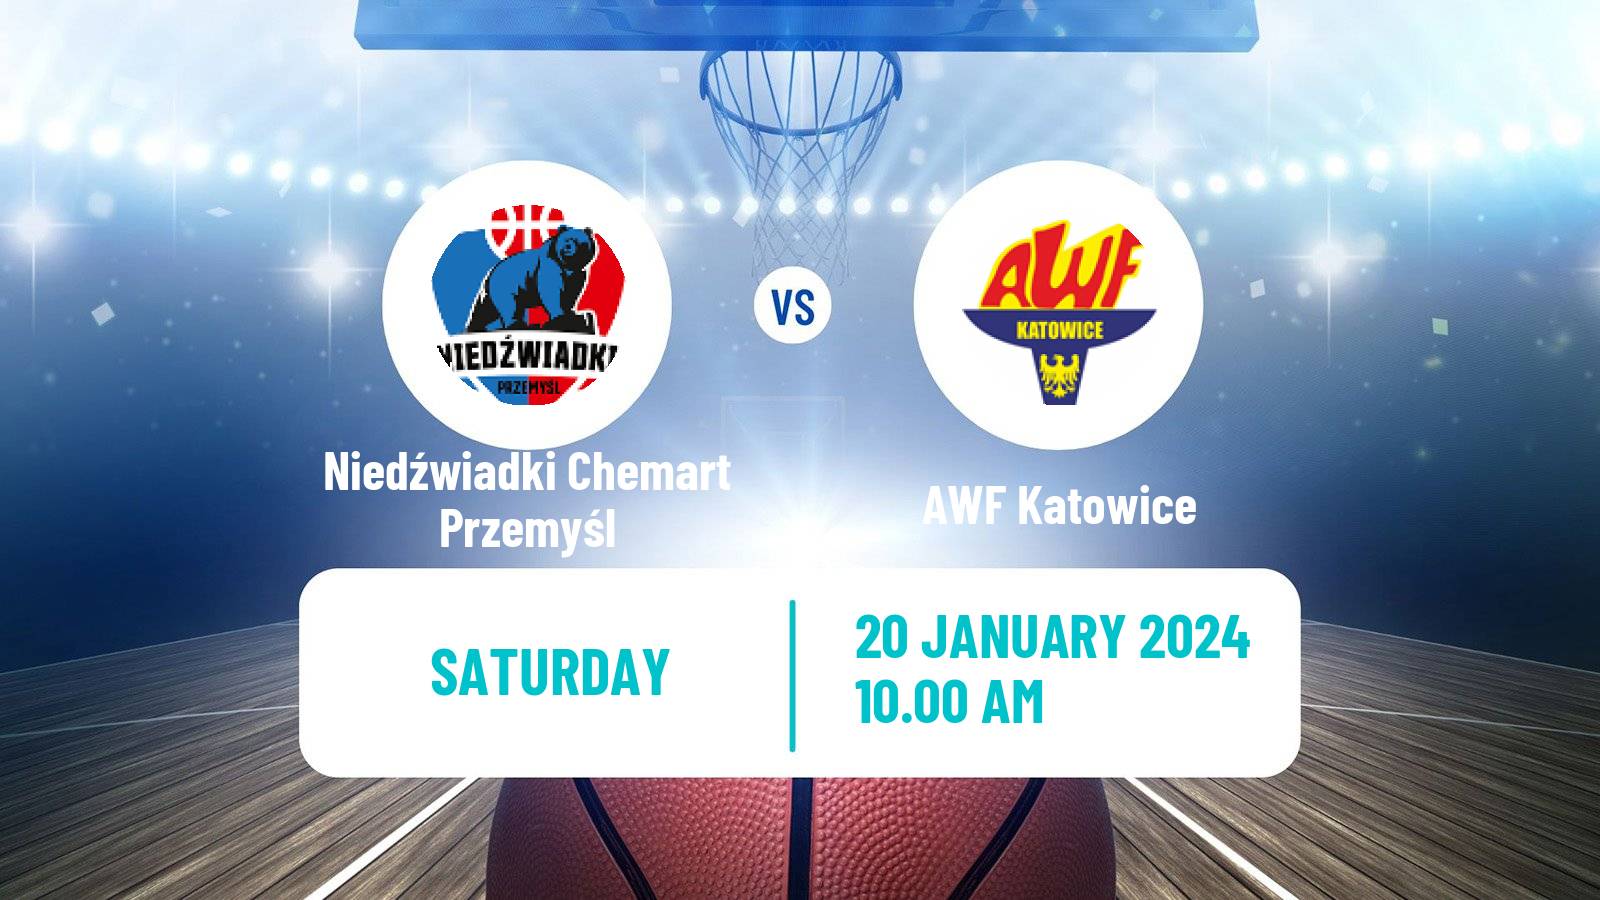 Basketball Polish 1 Liga Basketball Niedźwiadki Chemart Przemyśl - AWF Katowice